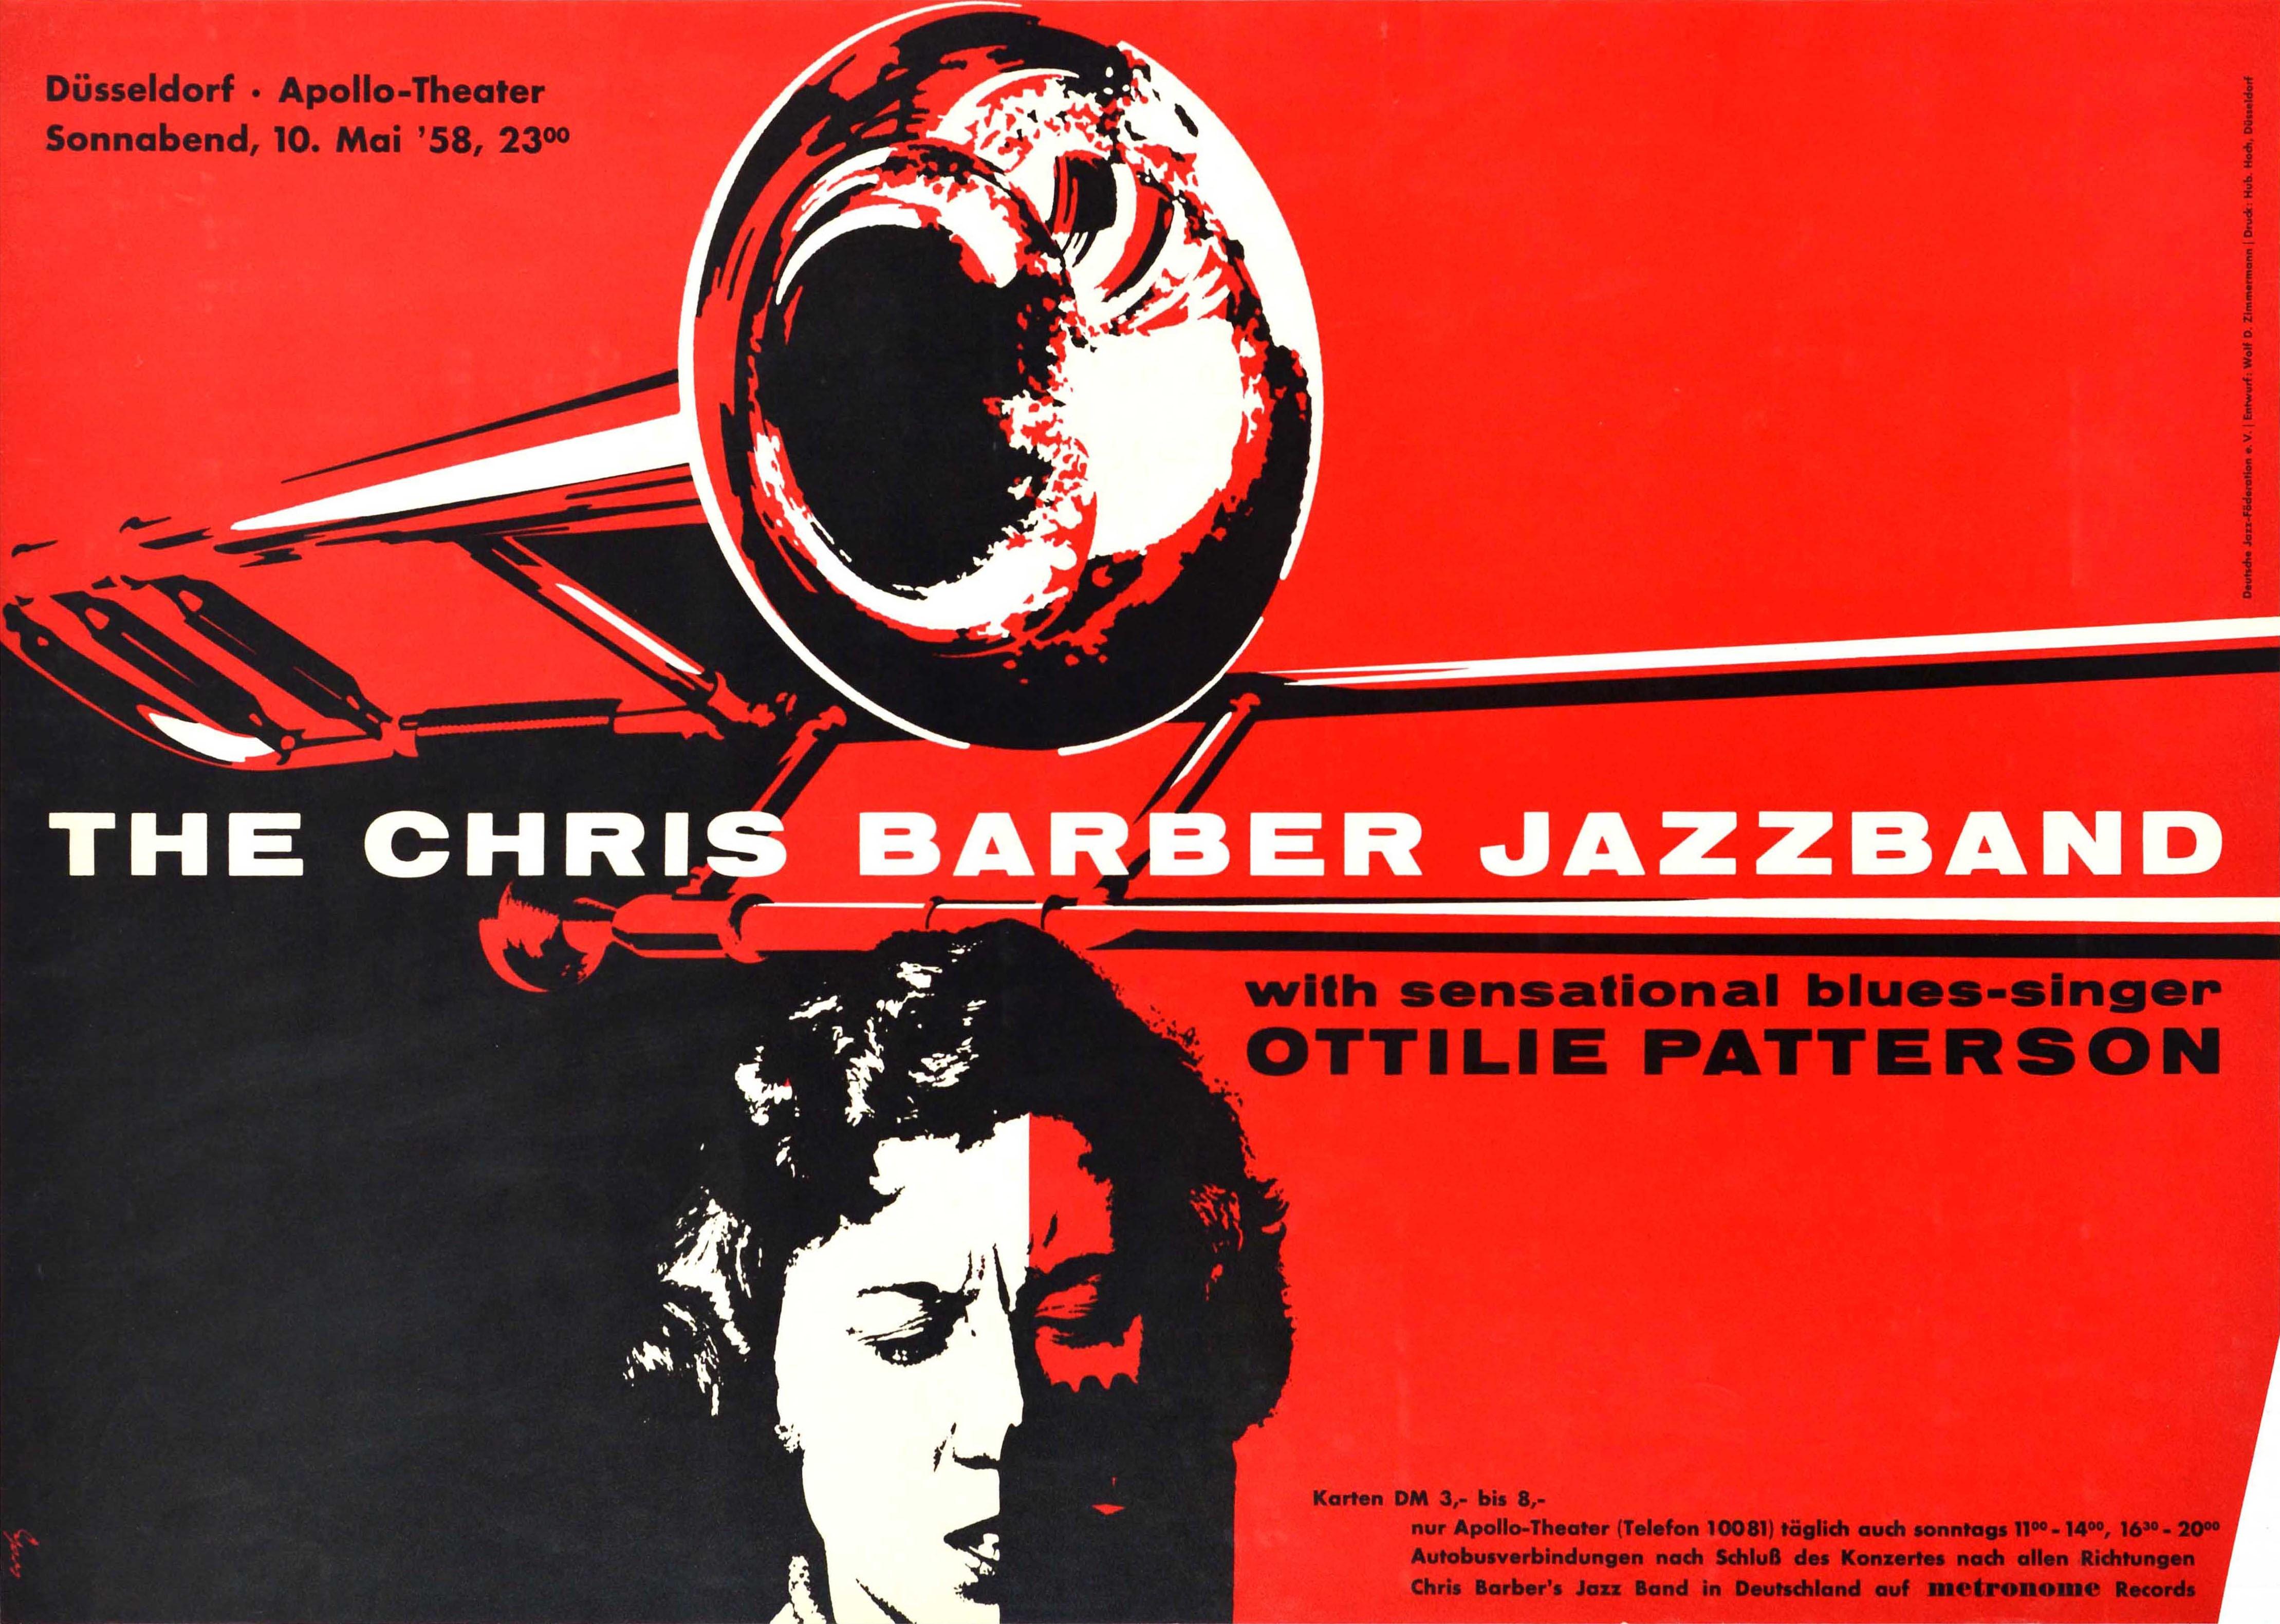 Affiche publicitaire originale pour un concert de musique avec le Chris Barber Jazzband et la sensationnelle chanteuse de blues Ottilie Patterson au théâtre Apollo de Düsseldorf le 10 mai 1958. Superbe dessin représentant la chanteuse de blues